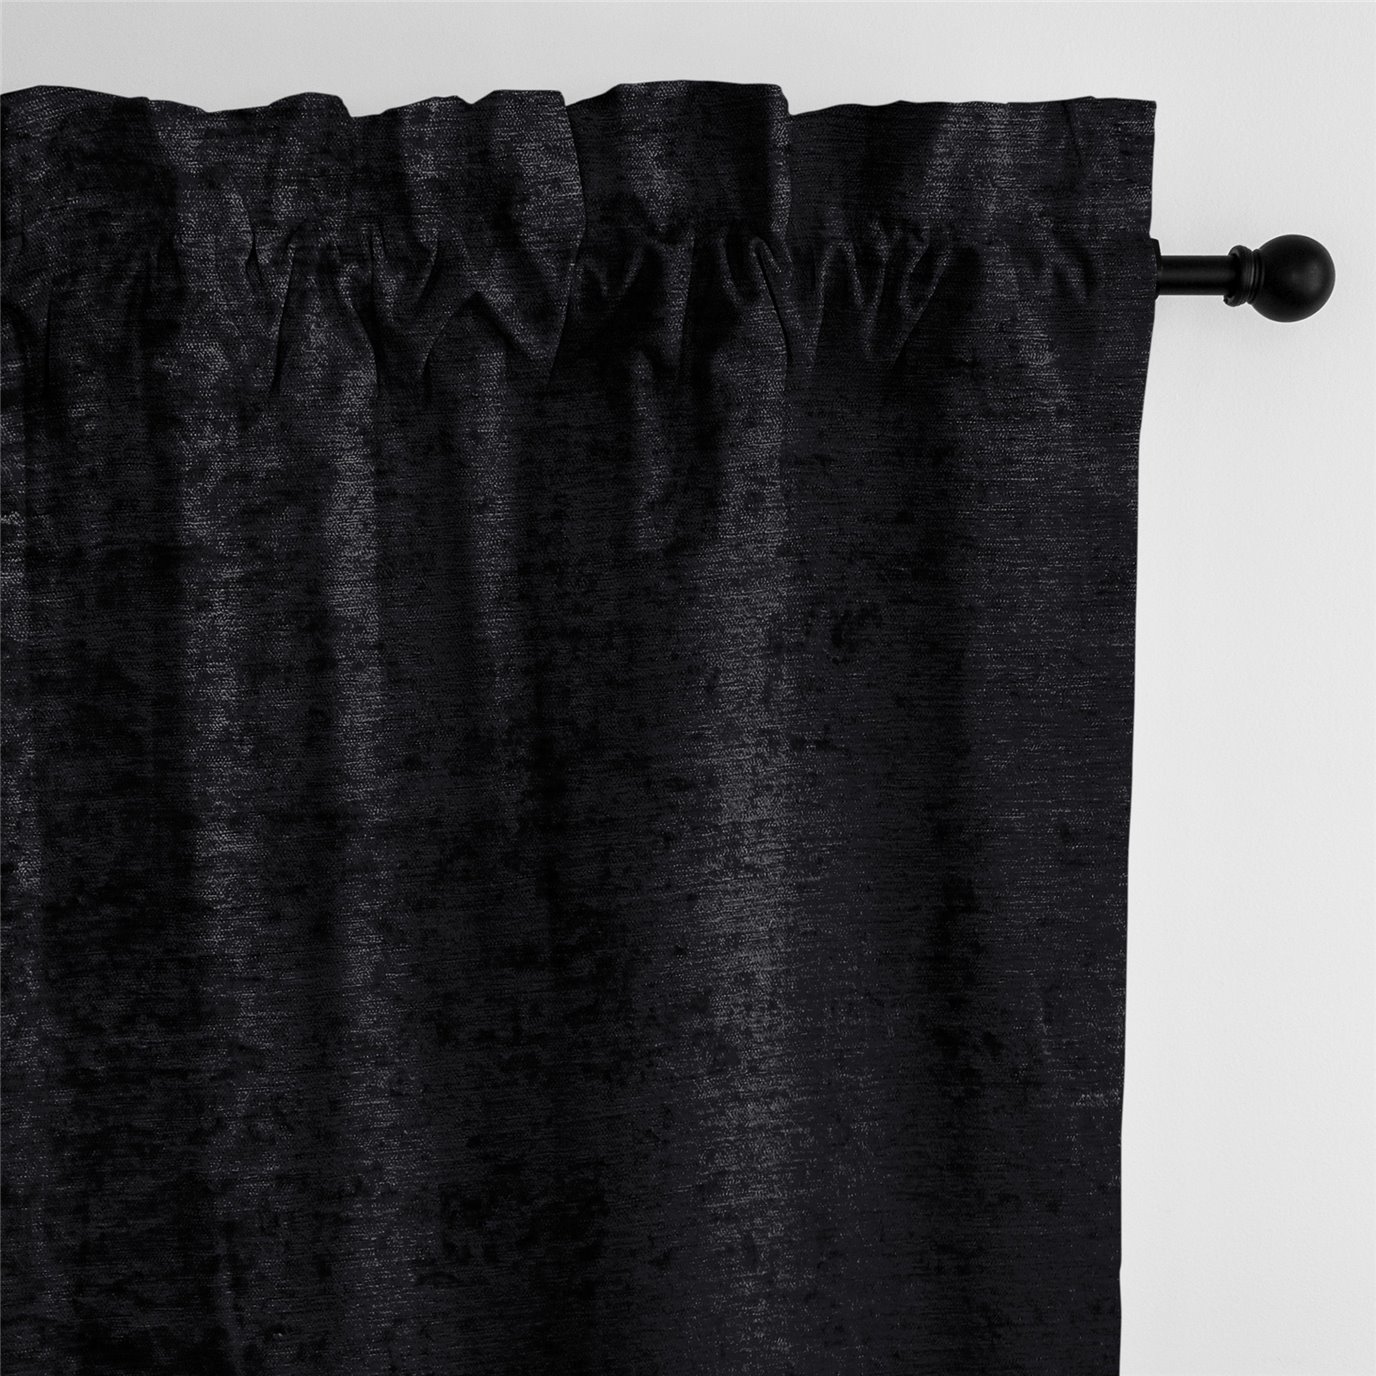 Juno Velvet Black Pole Top Drapery Panel - Pair - Size 50"x96"